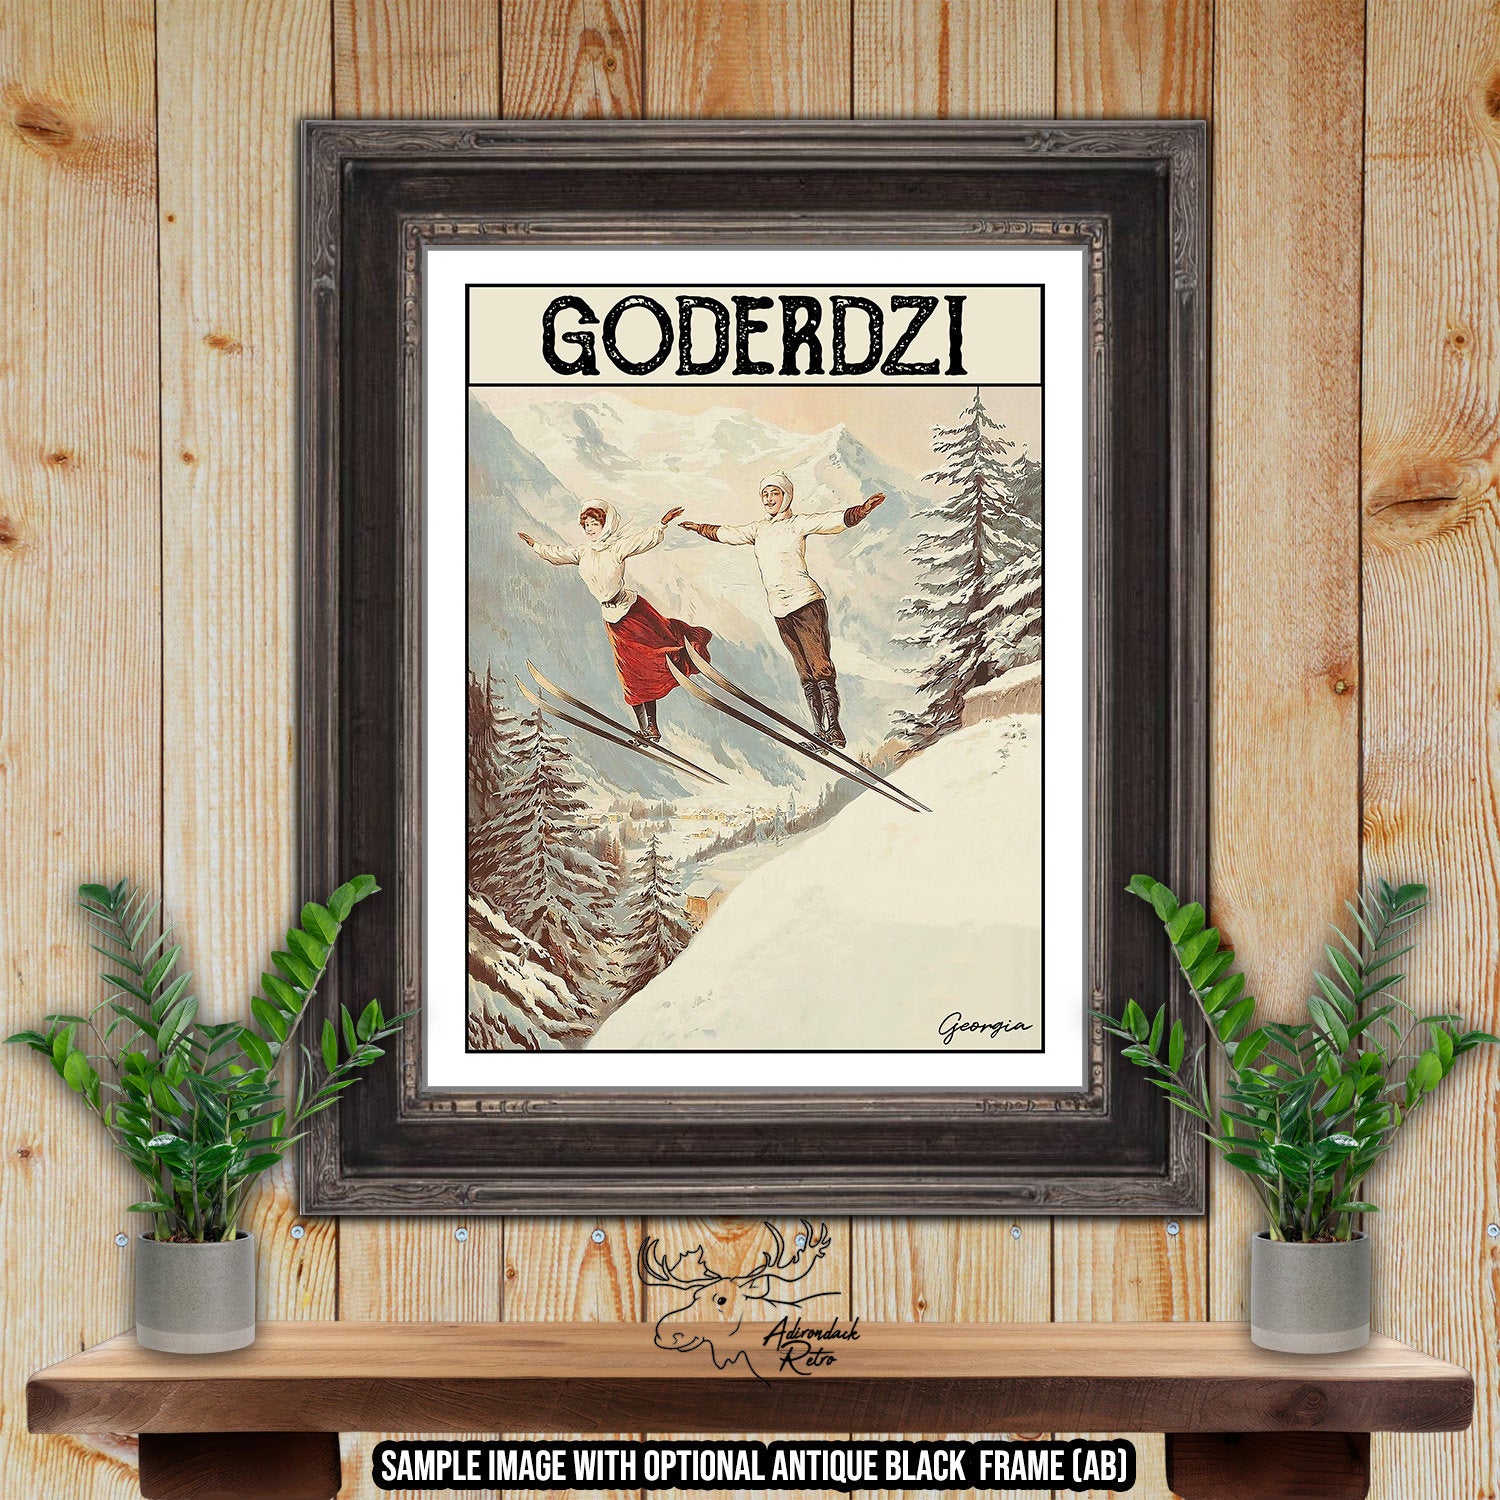 Goderdzi Georgia Retro Ski Resort Art Print at Adirondack Retro